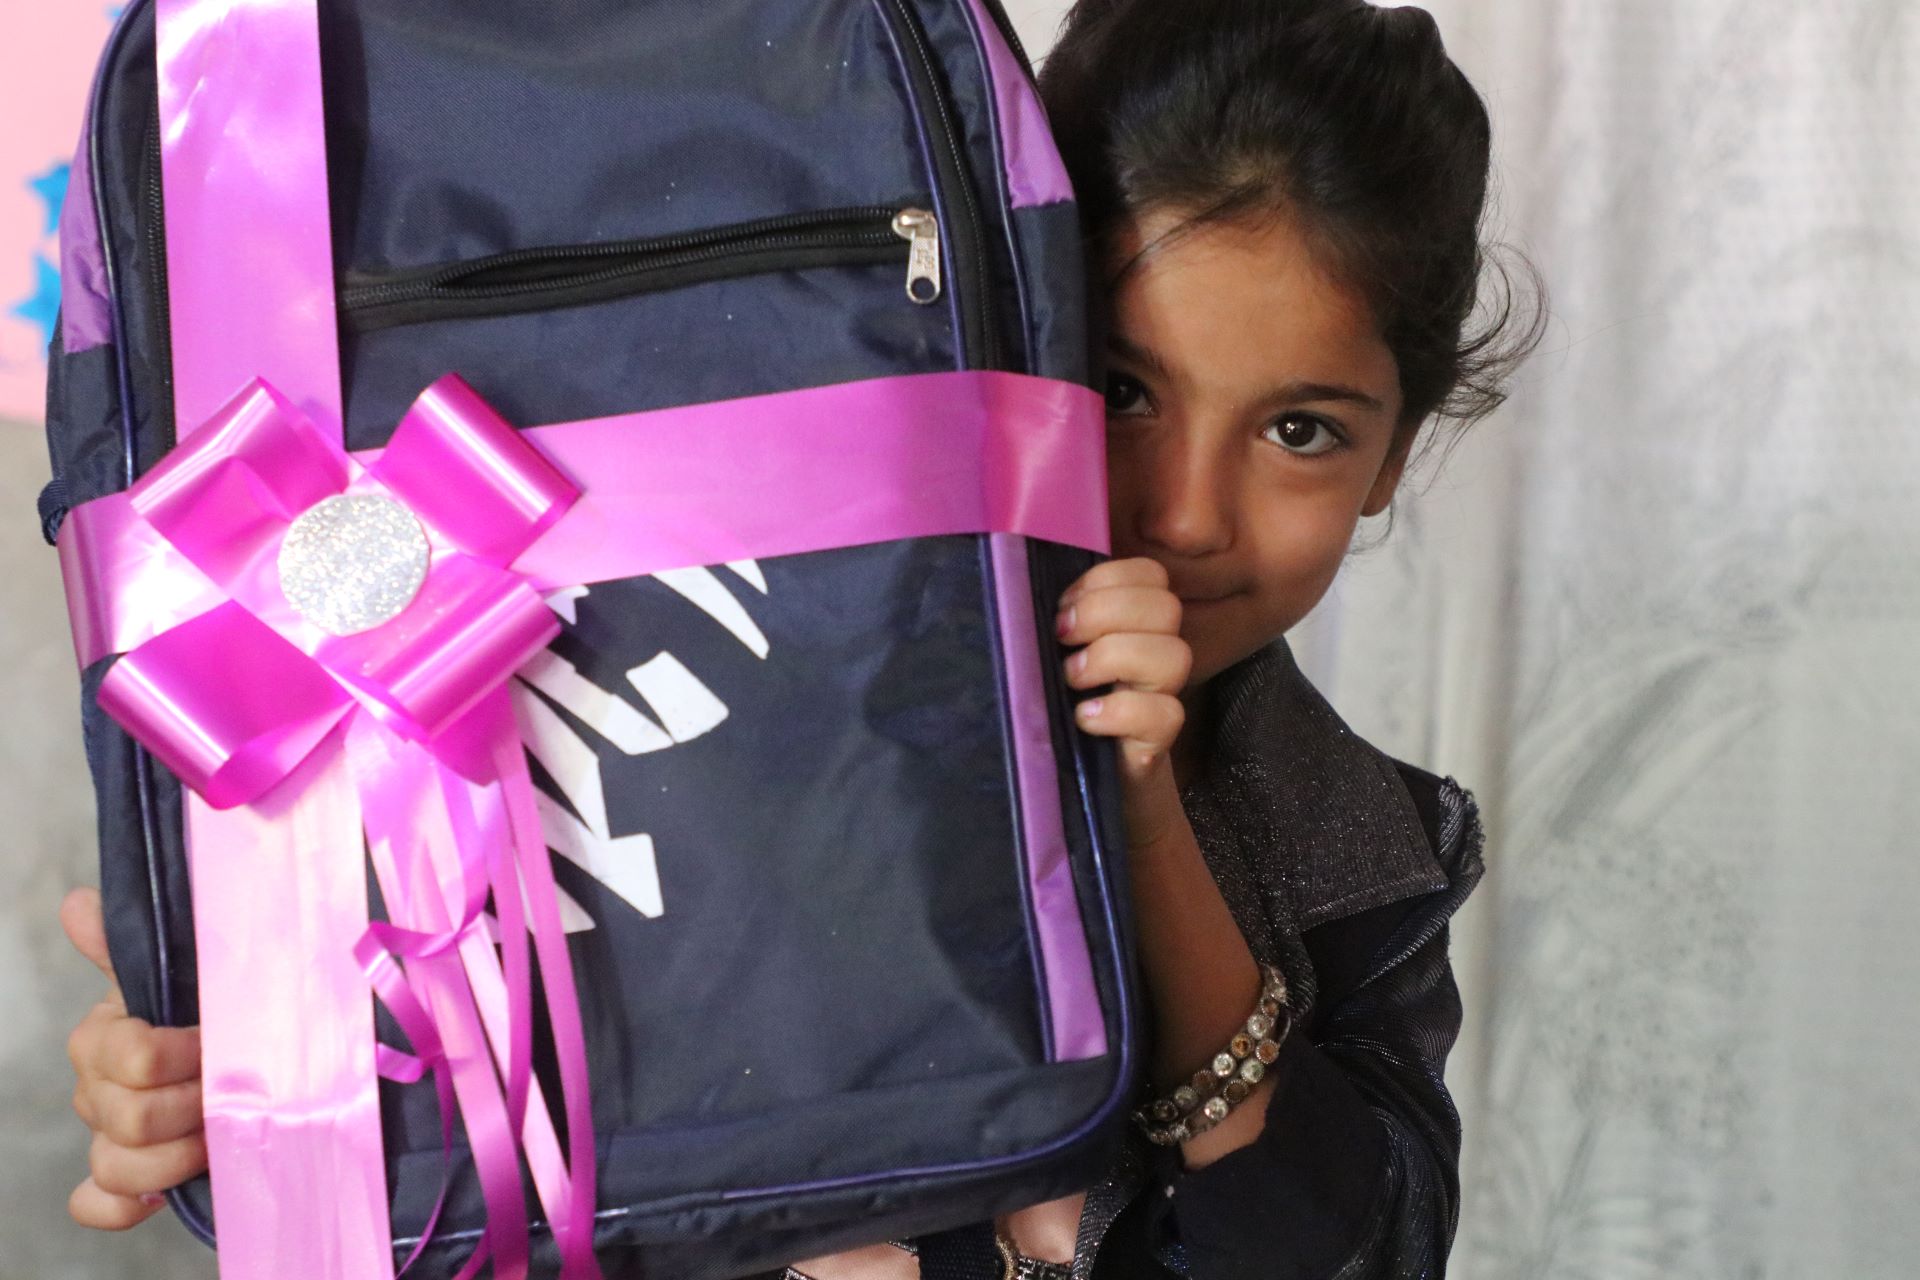 Ein Mädchen hält einen Schulrucksack mit großer pinkfarbener Schleife in die Kamera. Ihr Gesicht ist zur Hälfe hinter dem Rucksack versteckt, ihr Blick ist schüchtern.